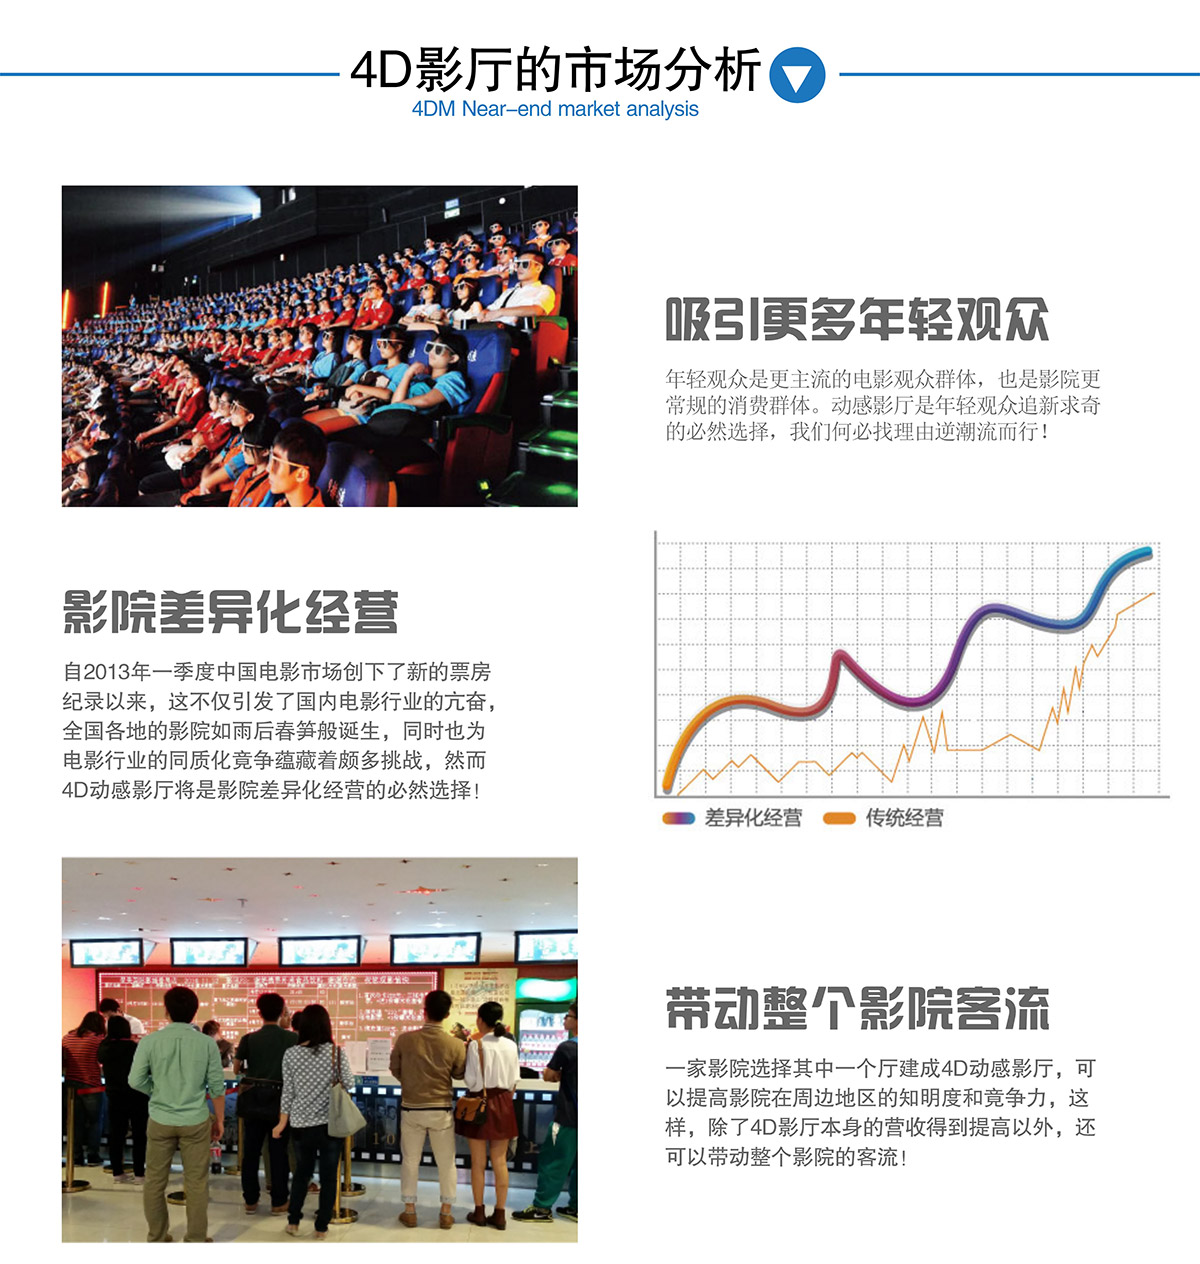 重庆4DM影厅的市场分析.jpg